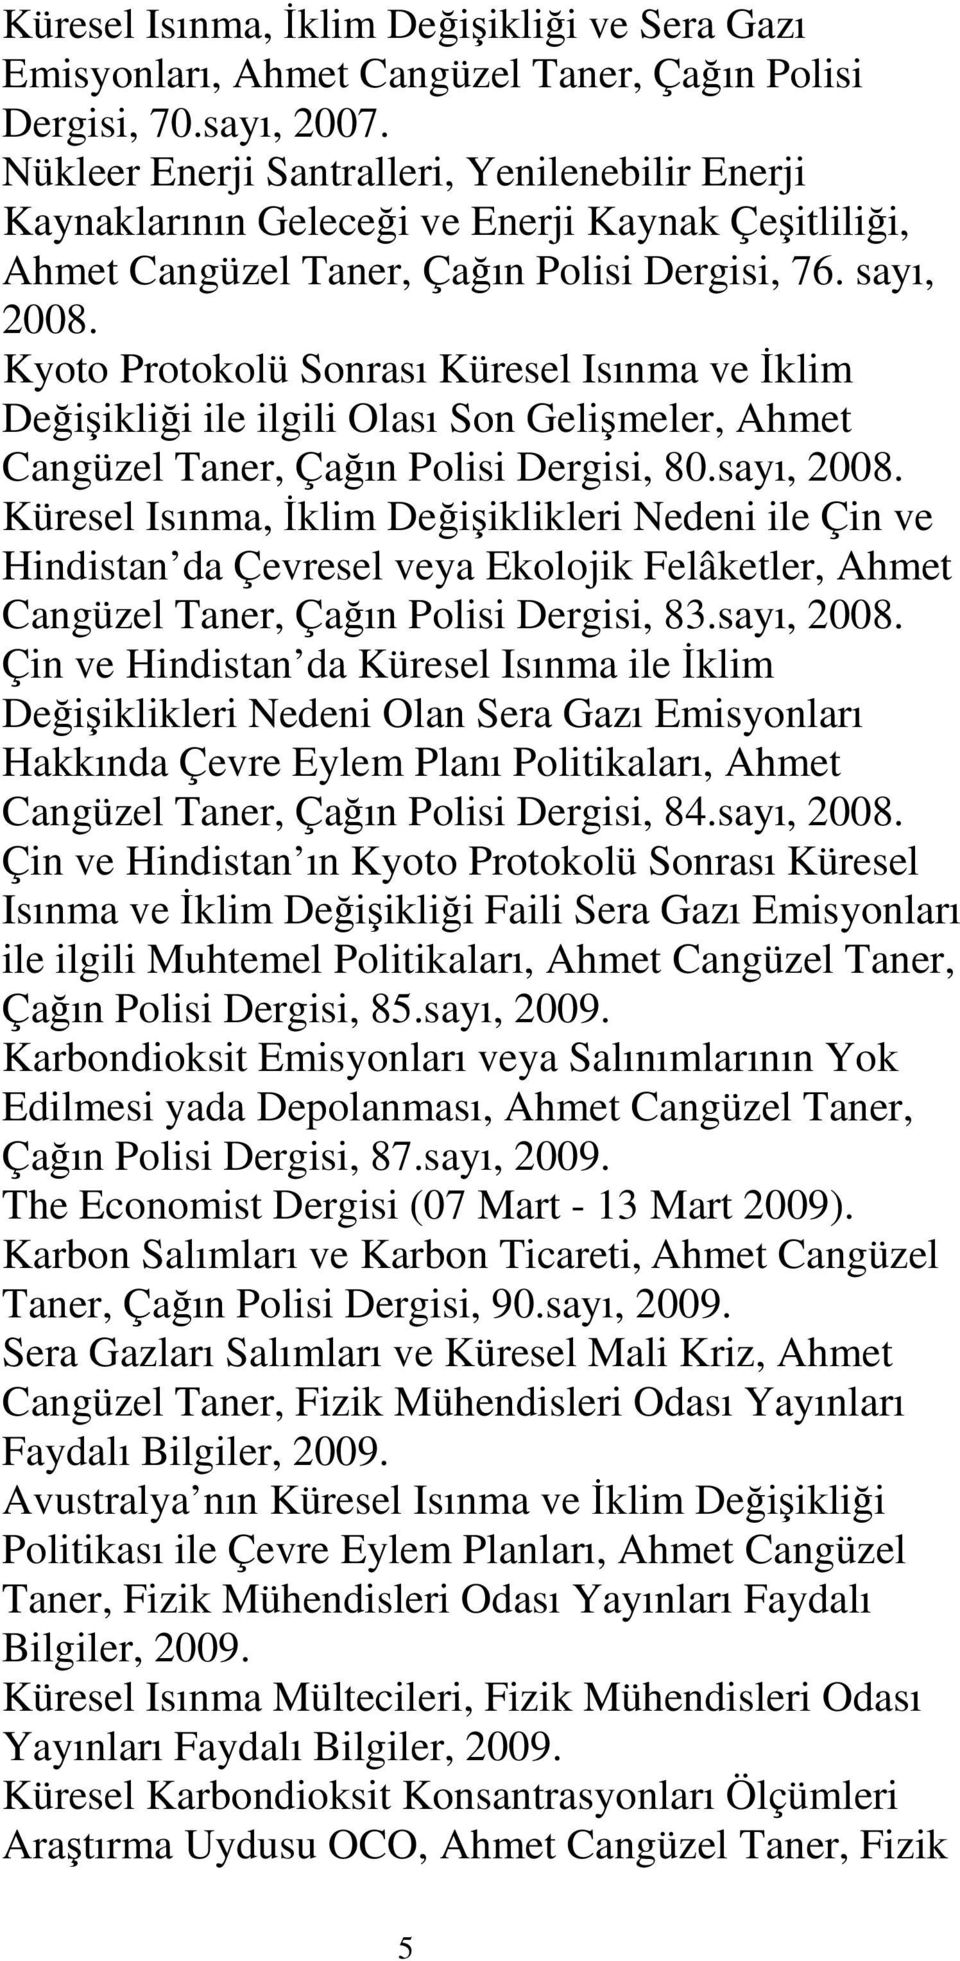 Kyoto Protokolü Sonrası Küresel Isınma ve Đklim Değişikliği ile ilgili Olası Son Gelişmeler, Ahmet Cangüzel Taner, Çağın Polisi Dergisi, 80.sayı, 2008.